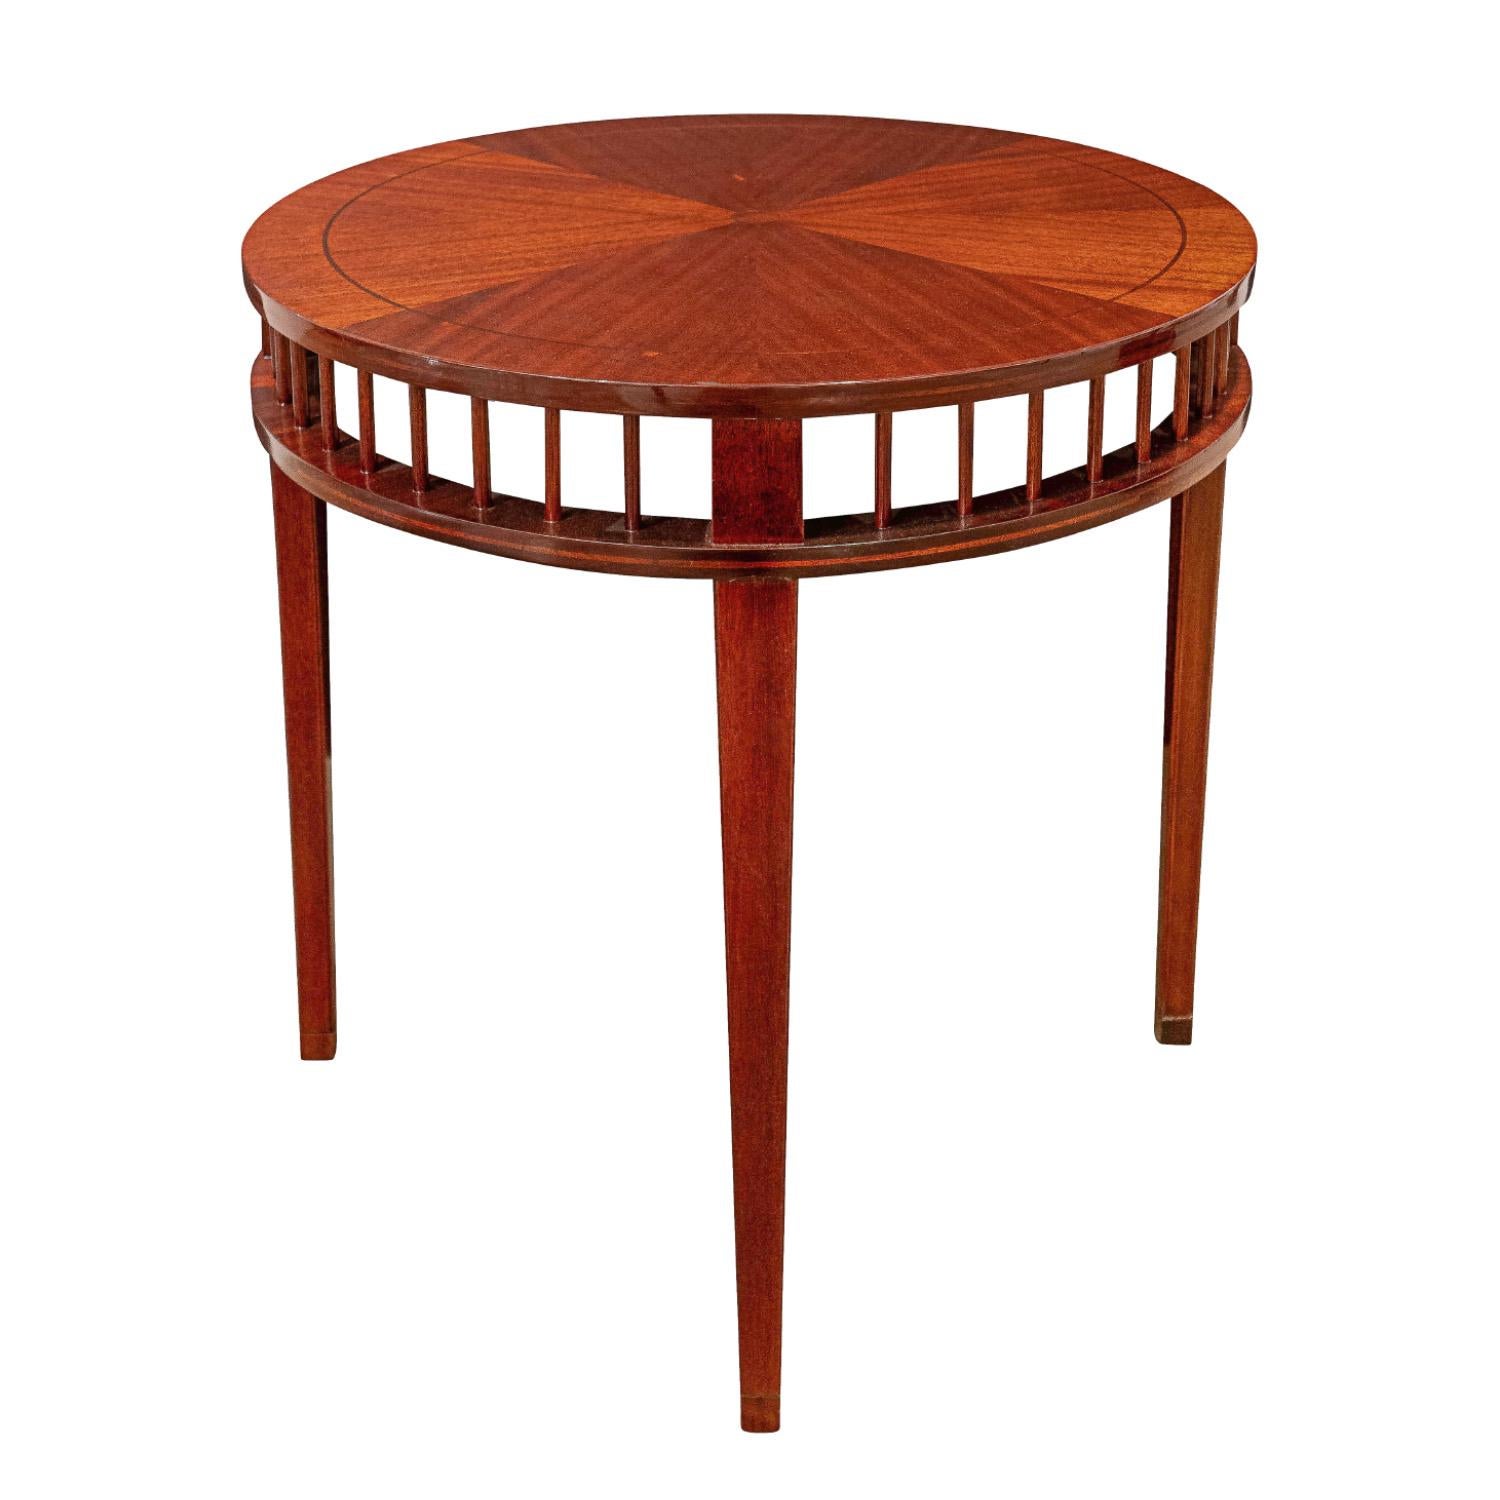 Modern Shelton-Mindel Designed Round Mahogany Side Table 1990s